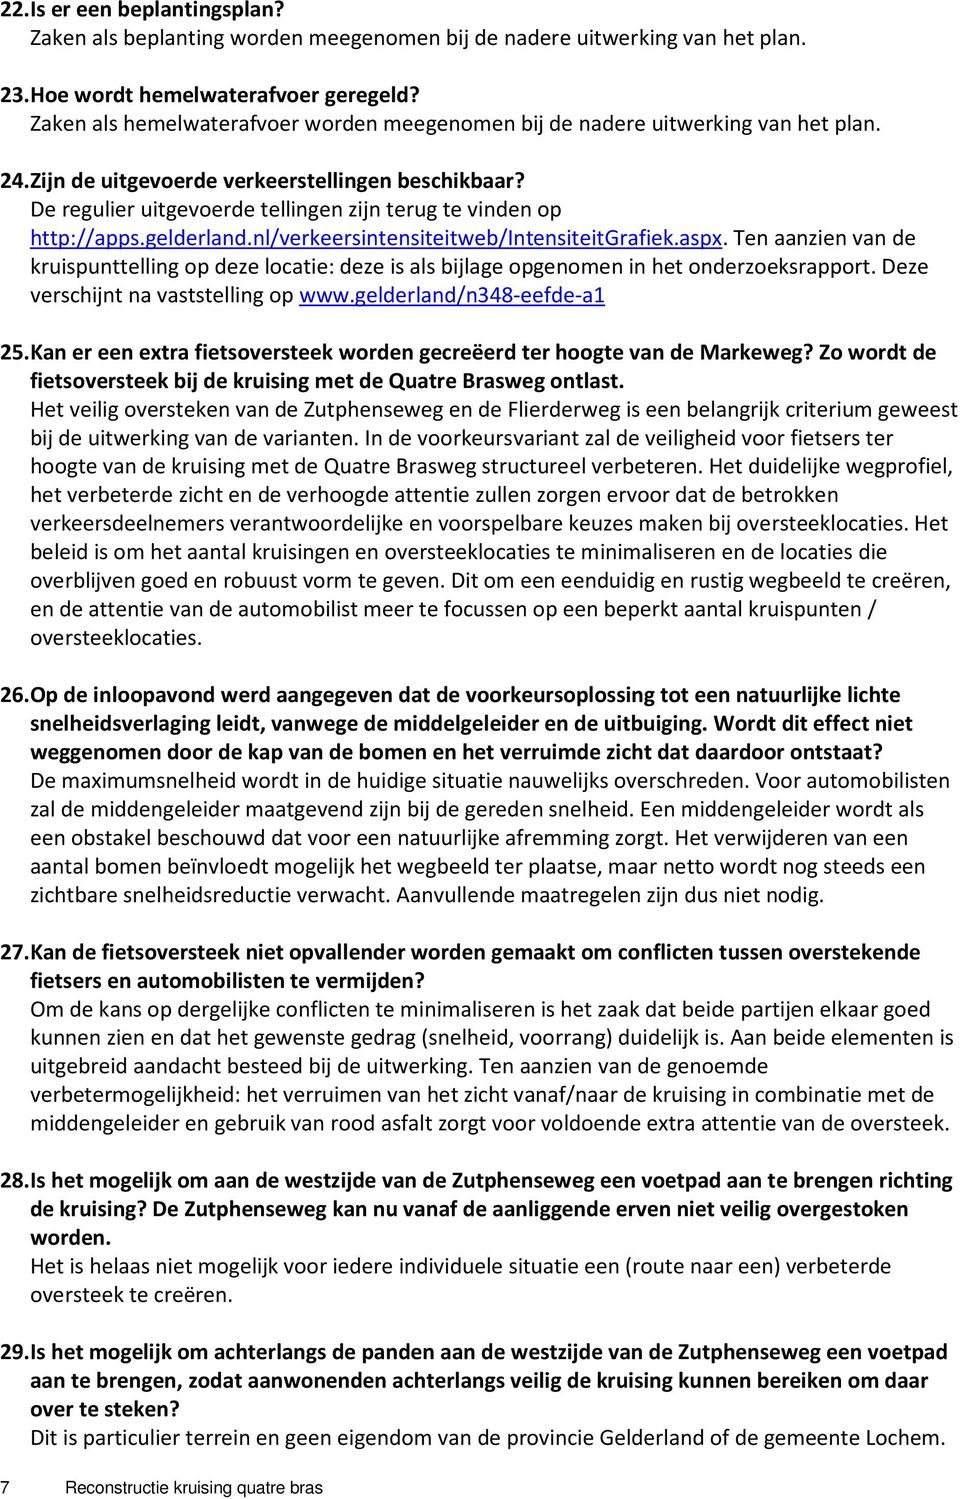 De regulier uitgevoerde tellingen zijn terug te vinden op http://apps.gelderland.nl/verkeersintensiteitweb/intensiteitgrafiek.aspx.